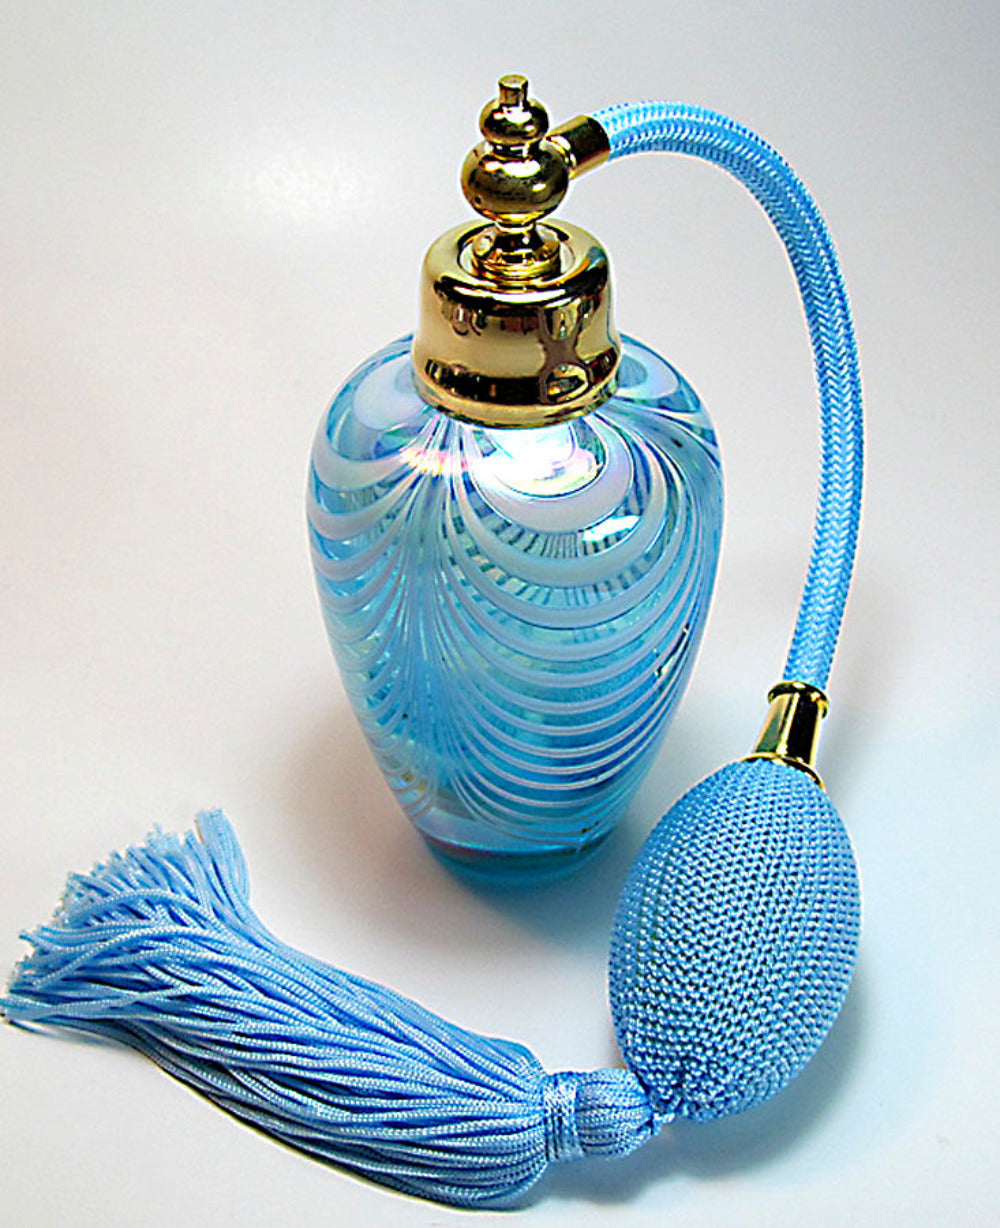 atomizer perfume bottles